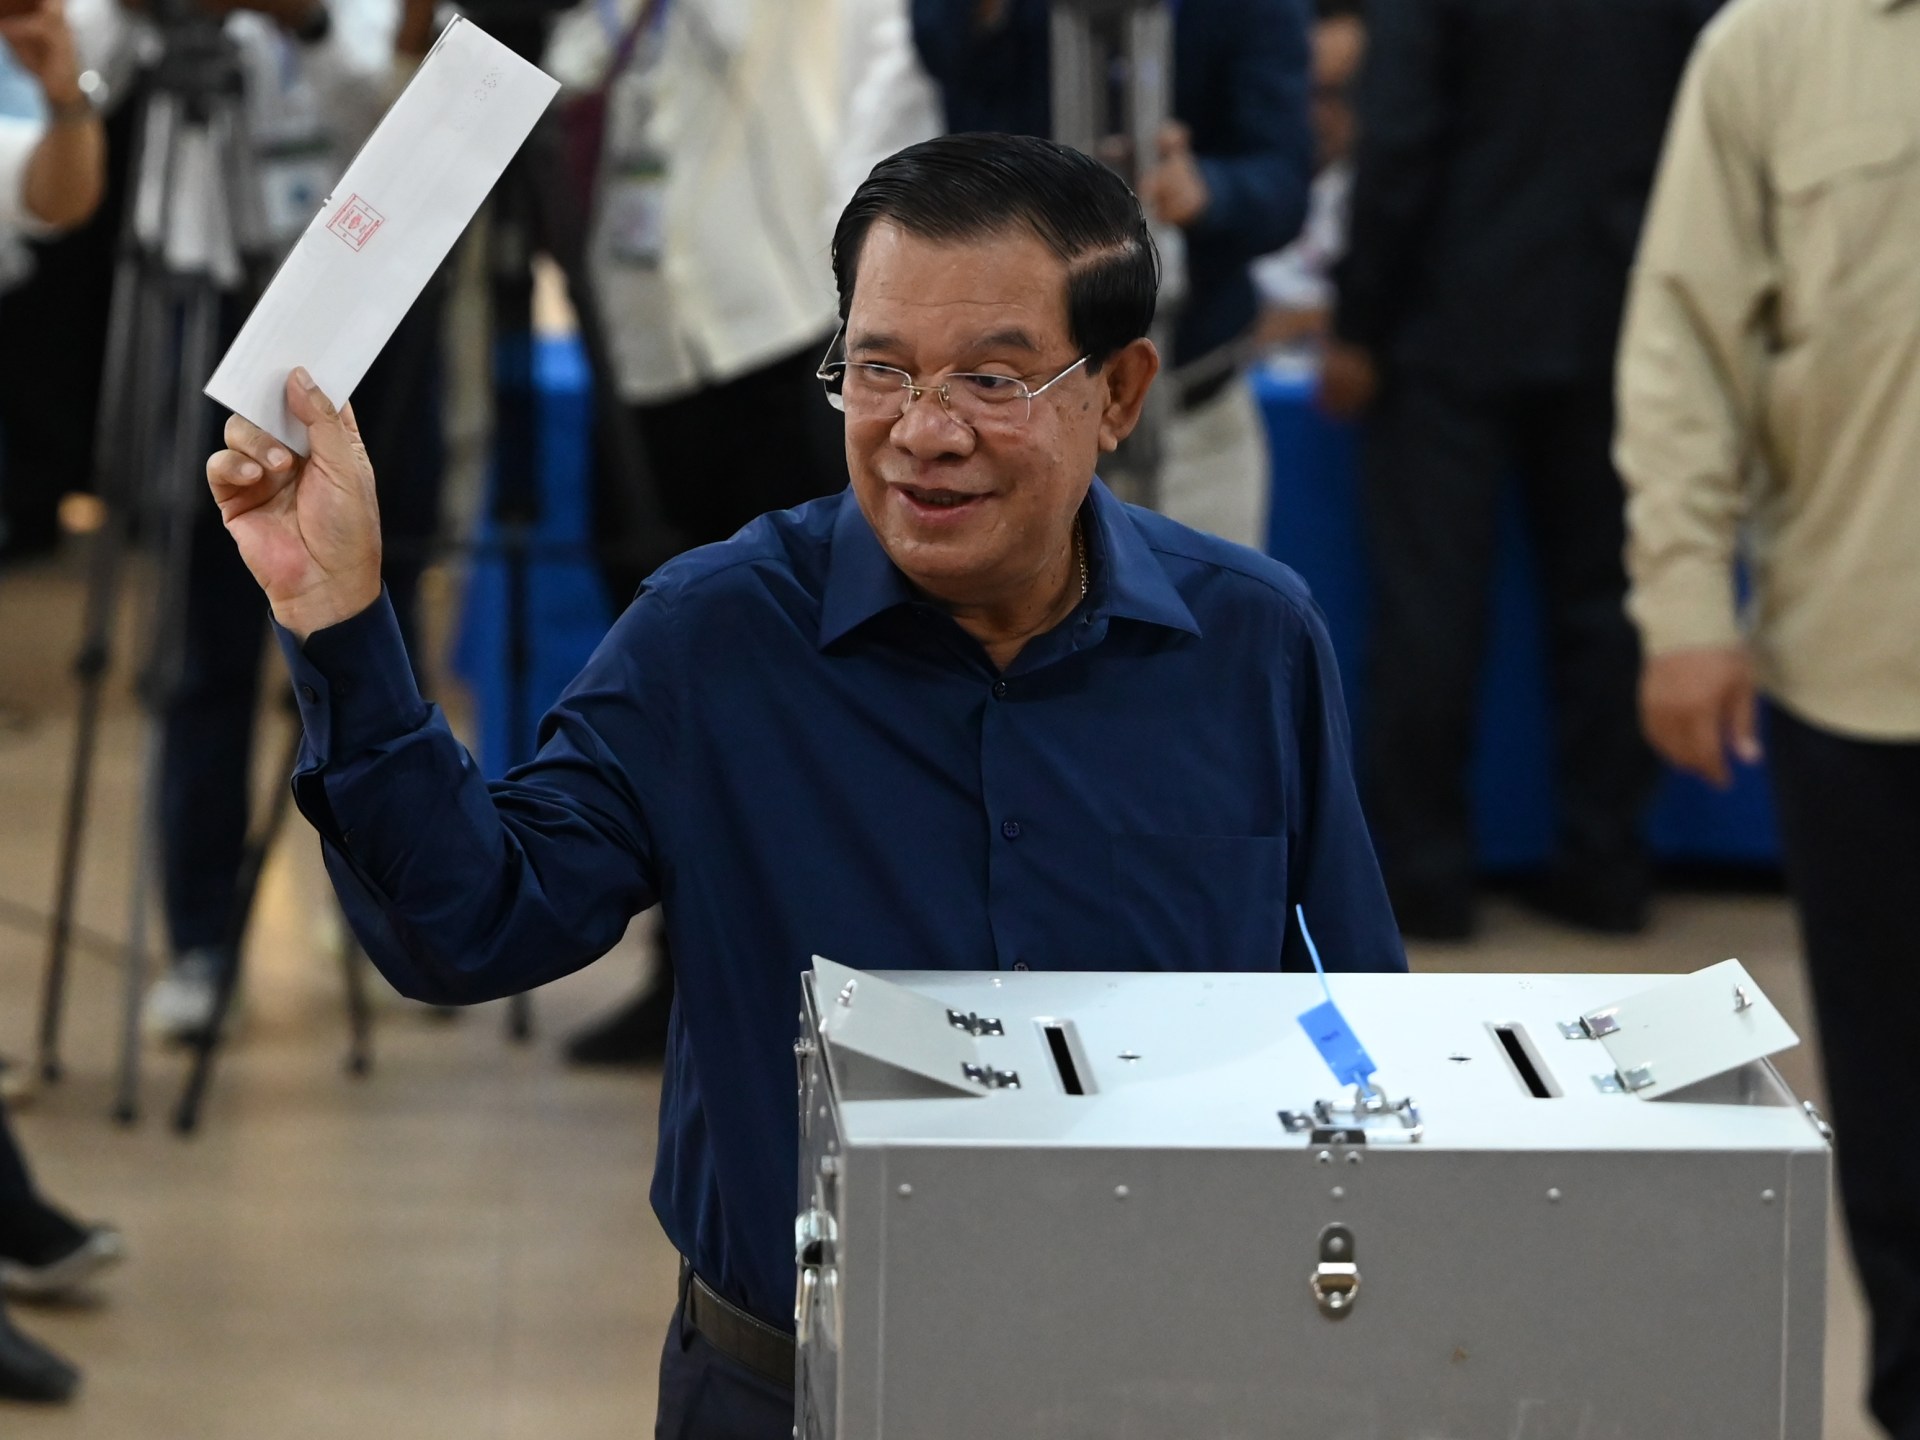 Premier Hun Sen zal naar verwachting de stemmen van Cambodja winnen in een eenzijdige verkiezing  Verkiezingsnieuws